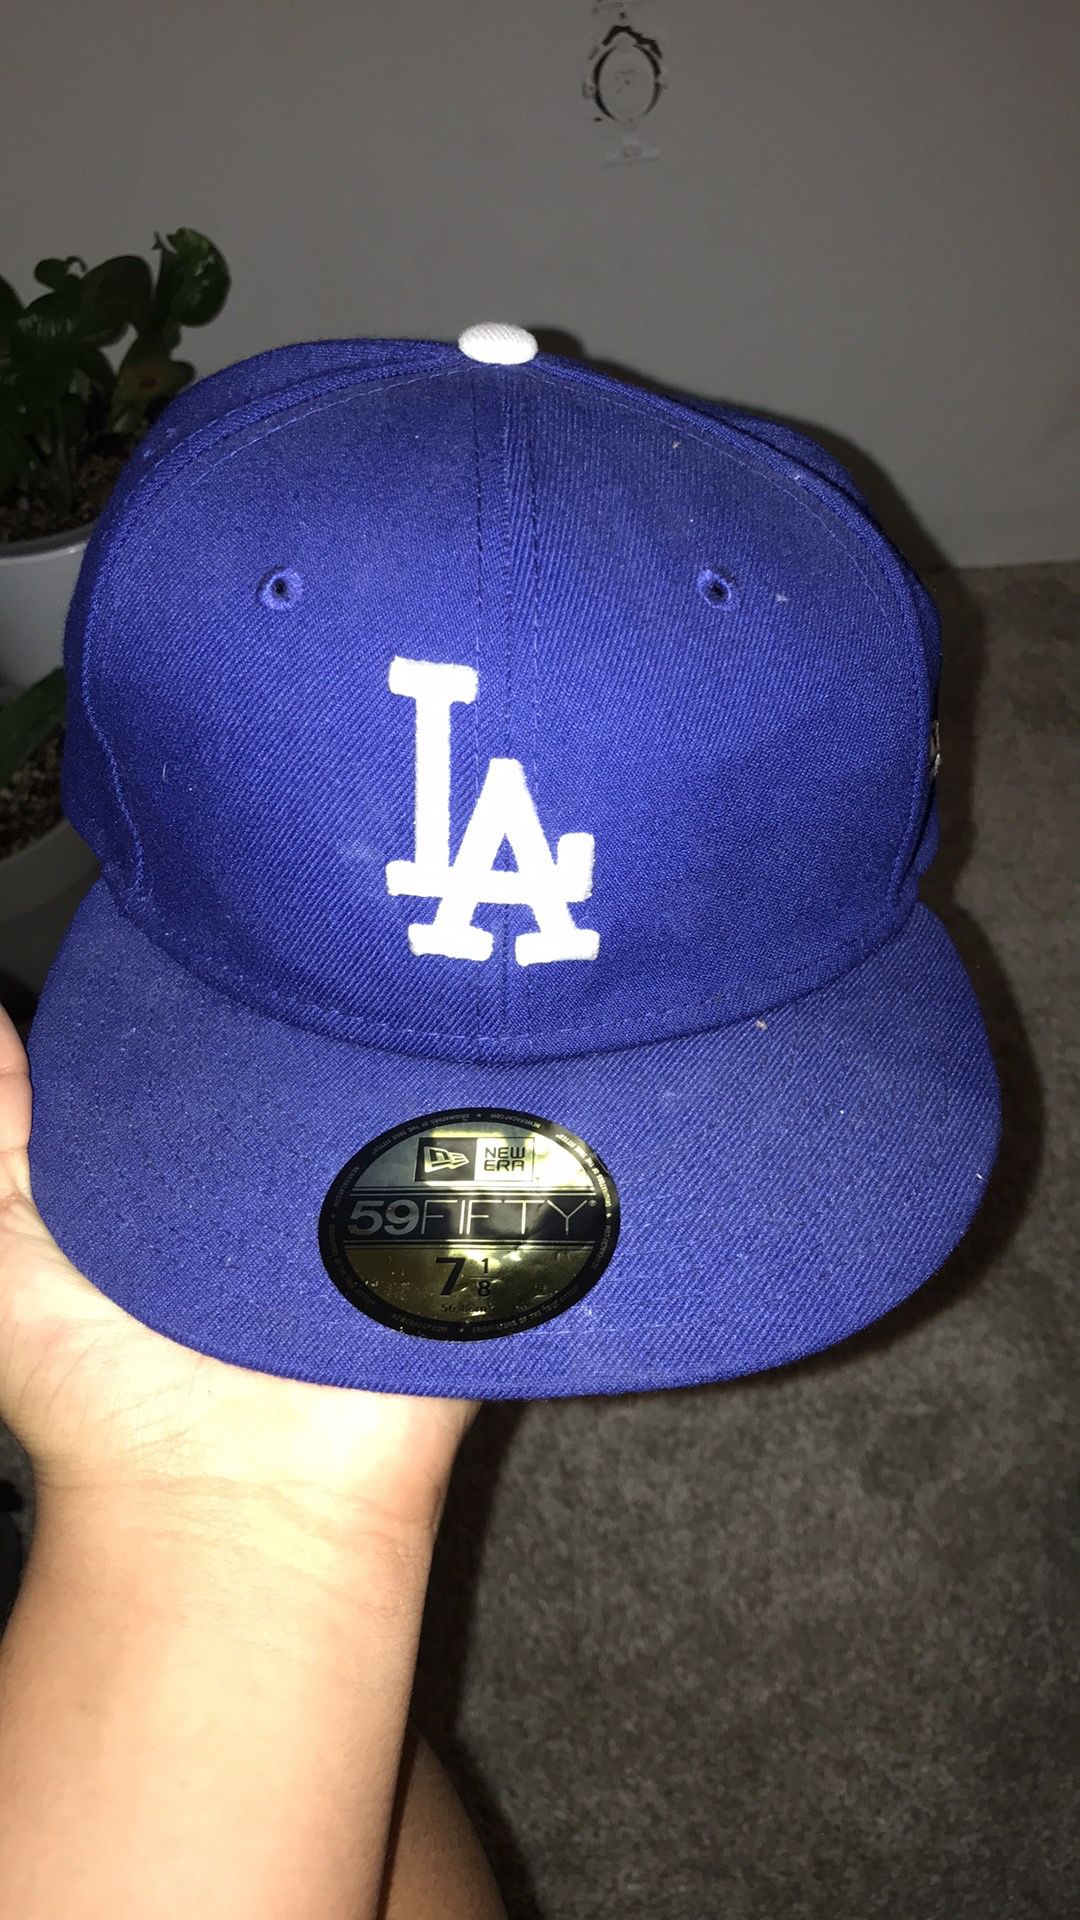 LA dodgers baseball cap